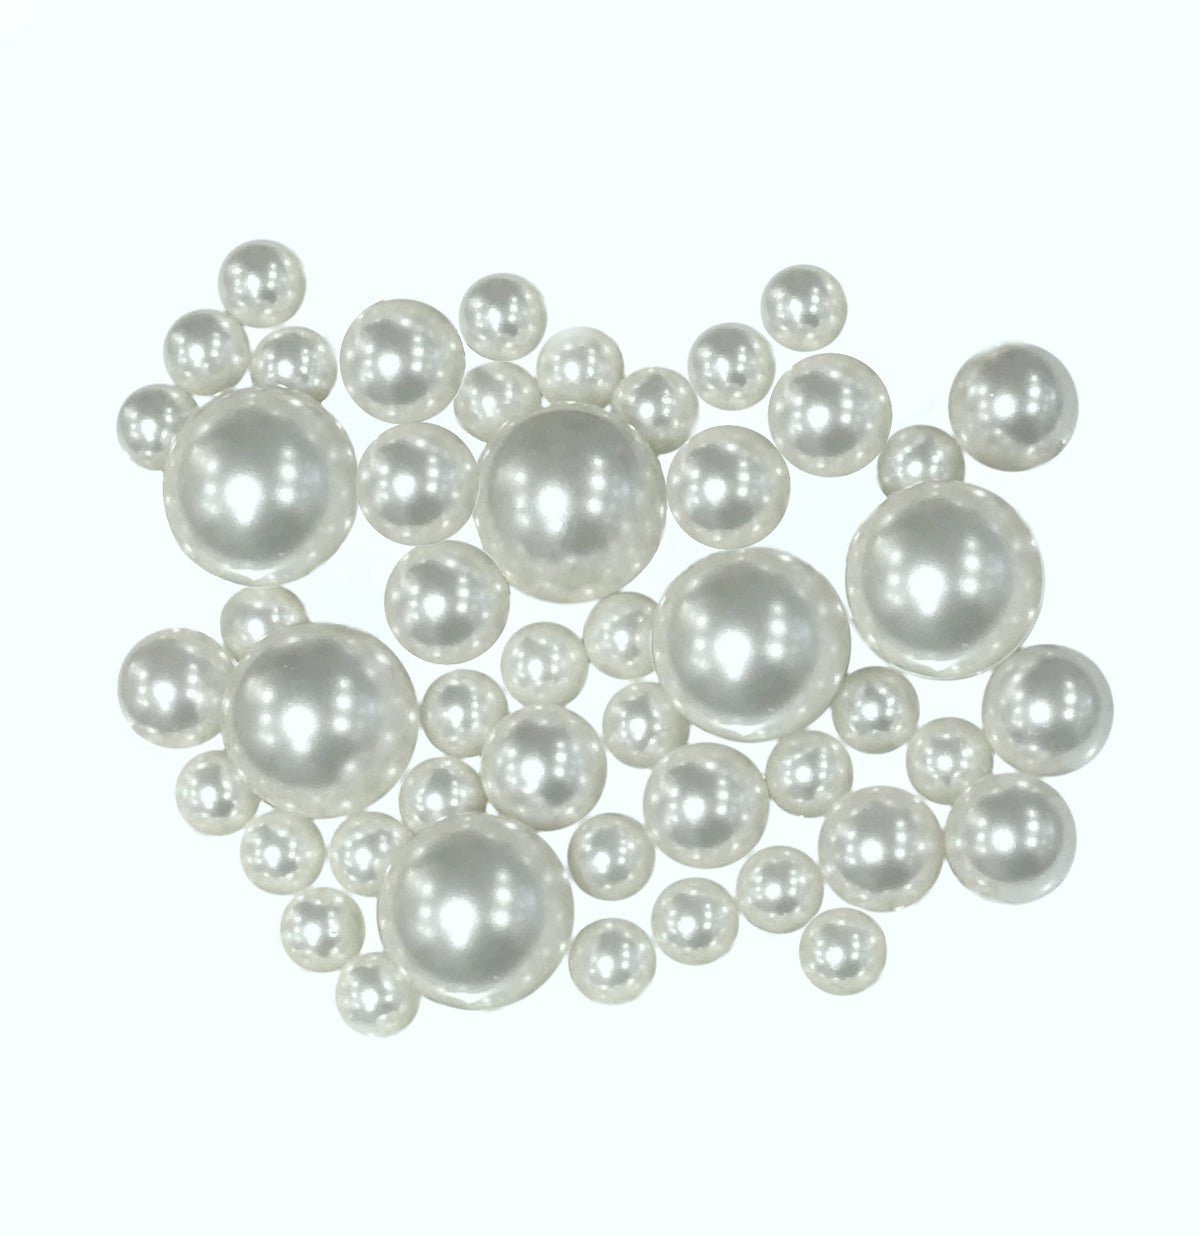 Perlas blancas "flotantes" sin agujeros - Decoración de jarrón de tamaños gigantes/variados